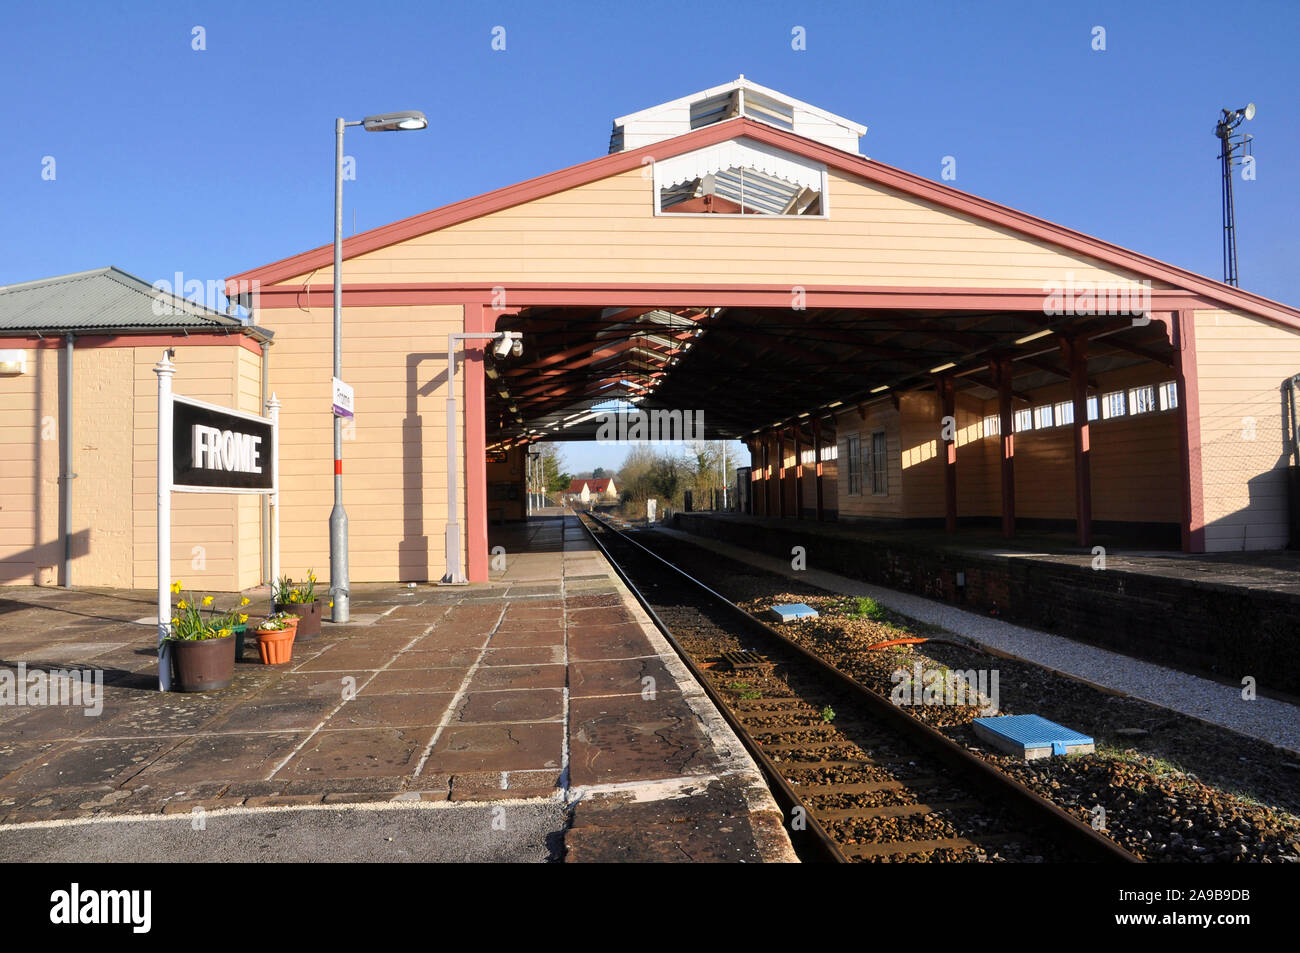 Frome gare, l'une des plus anciennes gares gare intermédiaire encore en usage.La construction bois a ouvert ses portes en 1850 à une conception par G Hannaford Banque D'Images